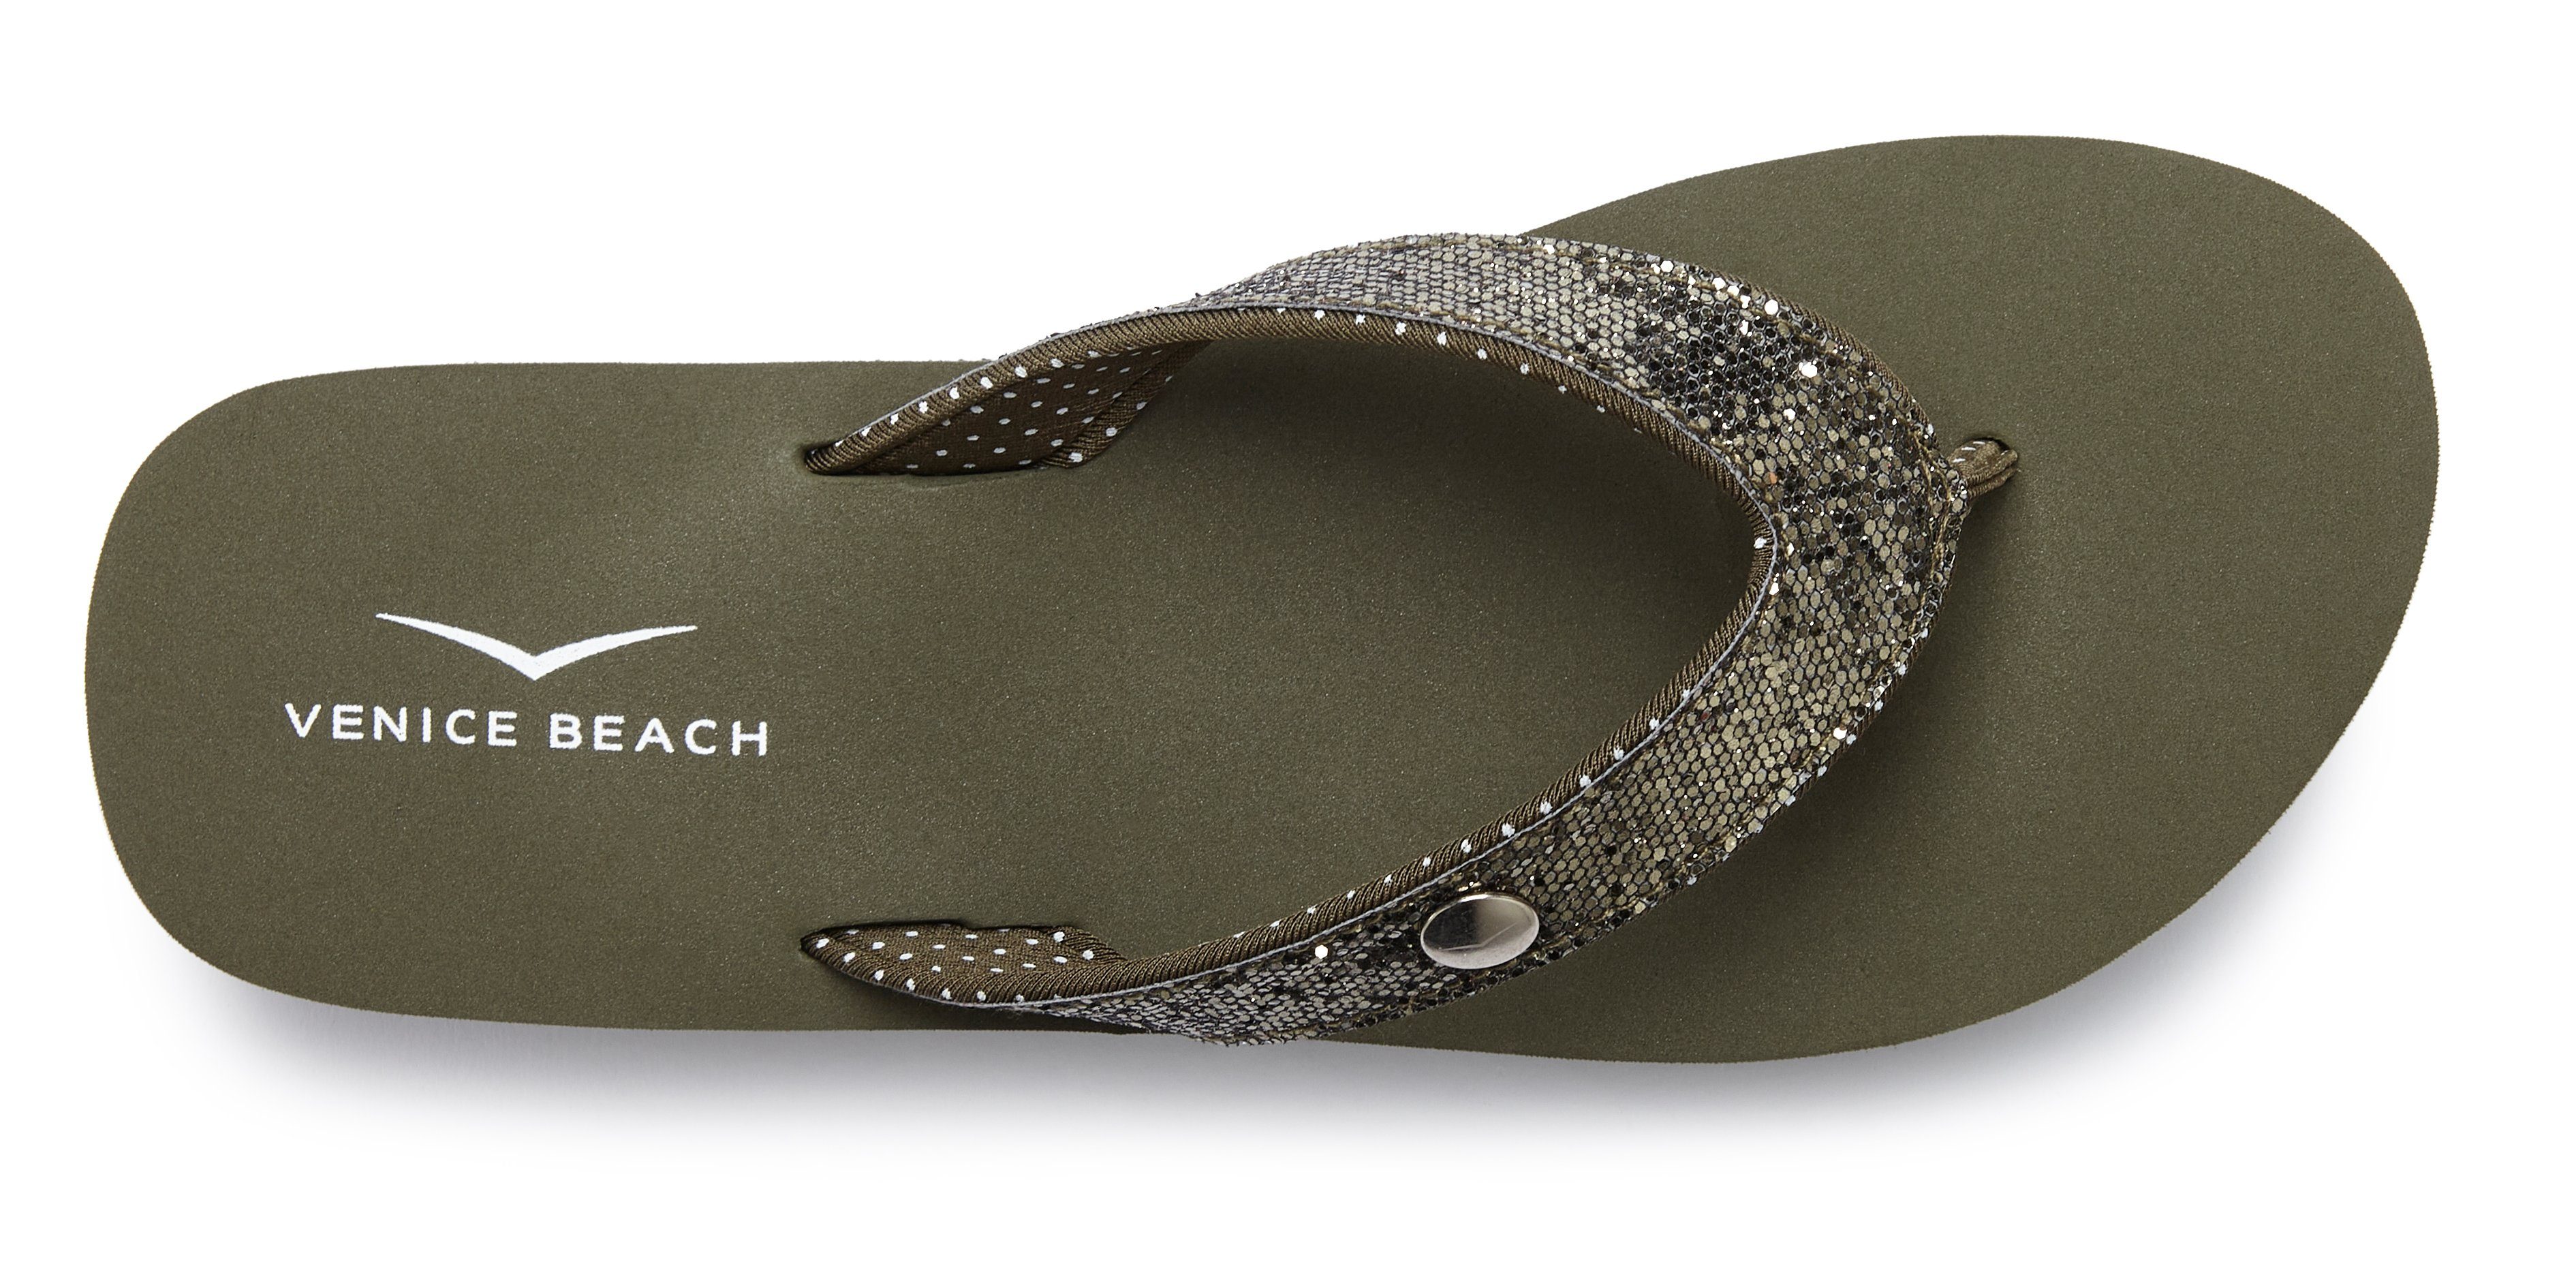 Beach Badezehentrenner Pantolette, mit Sandale, ultraleicht olivgrün Glitzerband Badeschuh VEGAN Venice